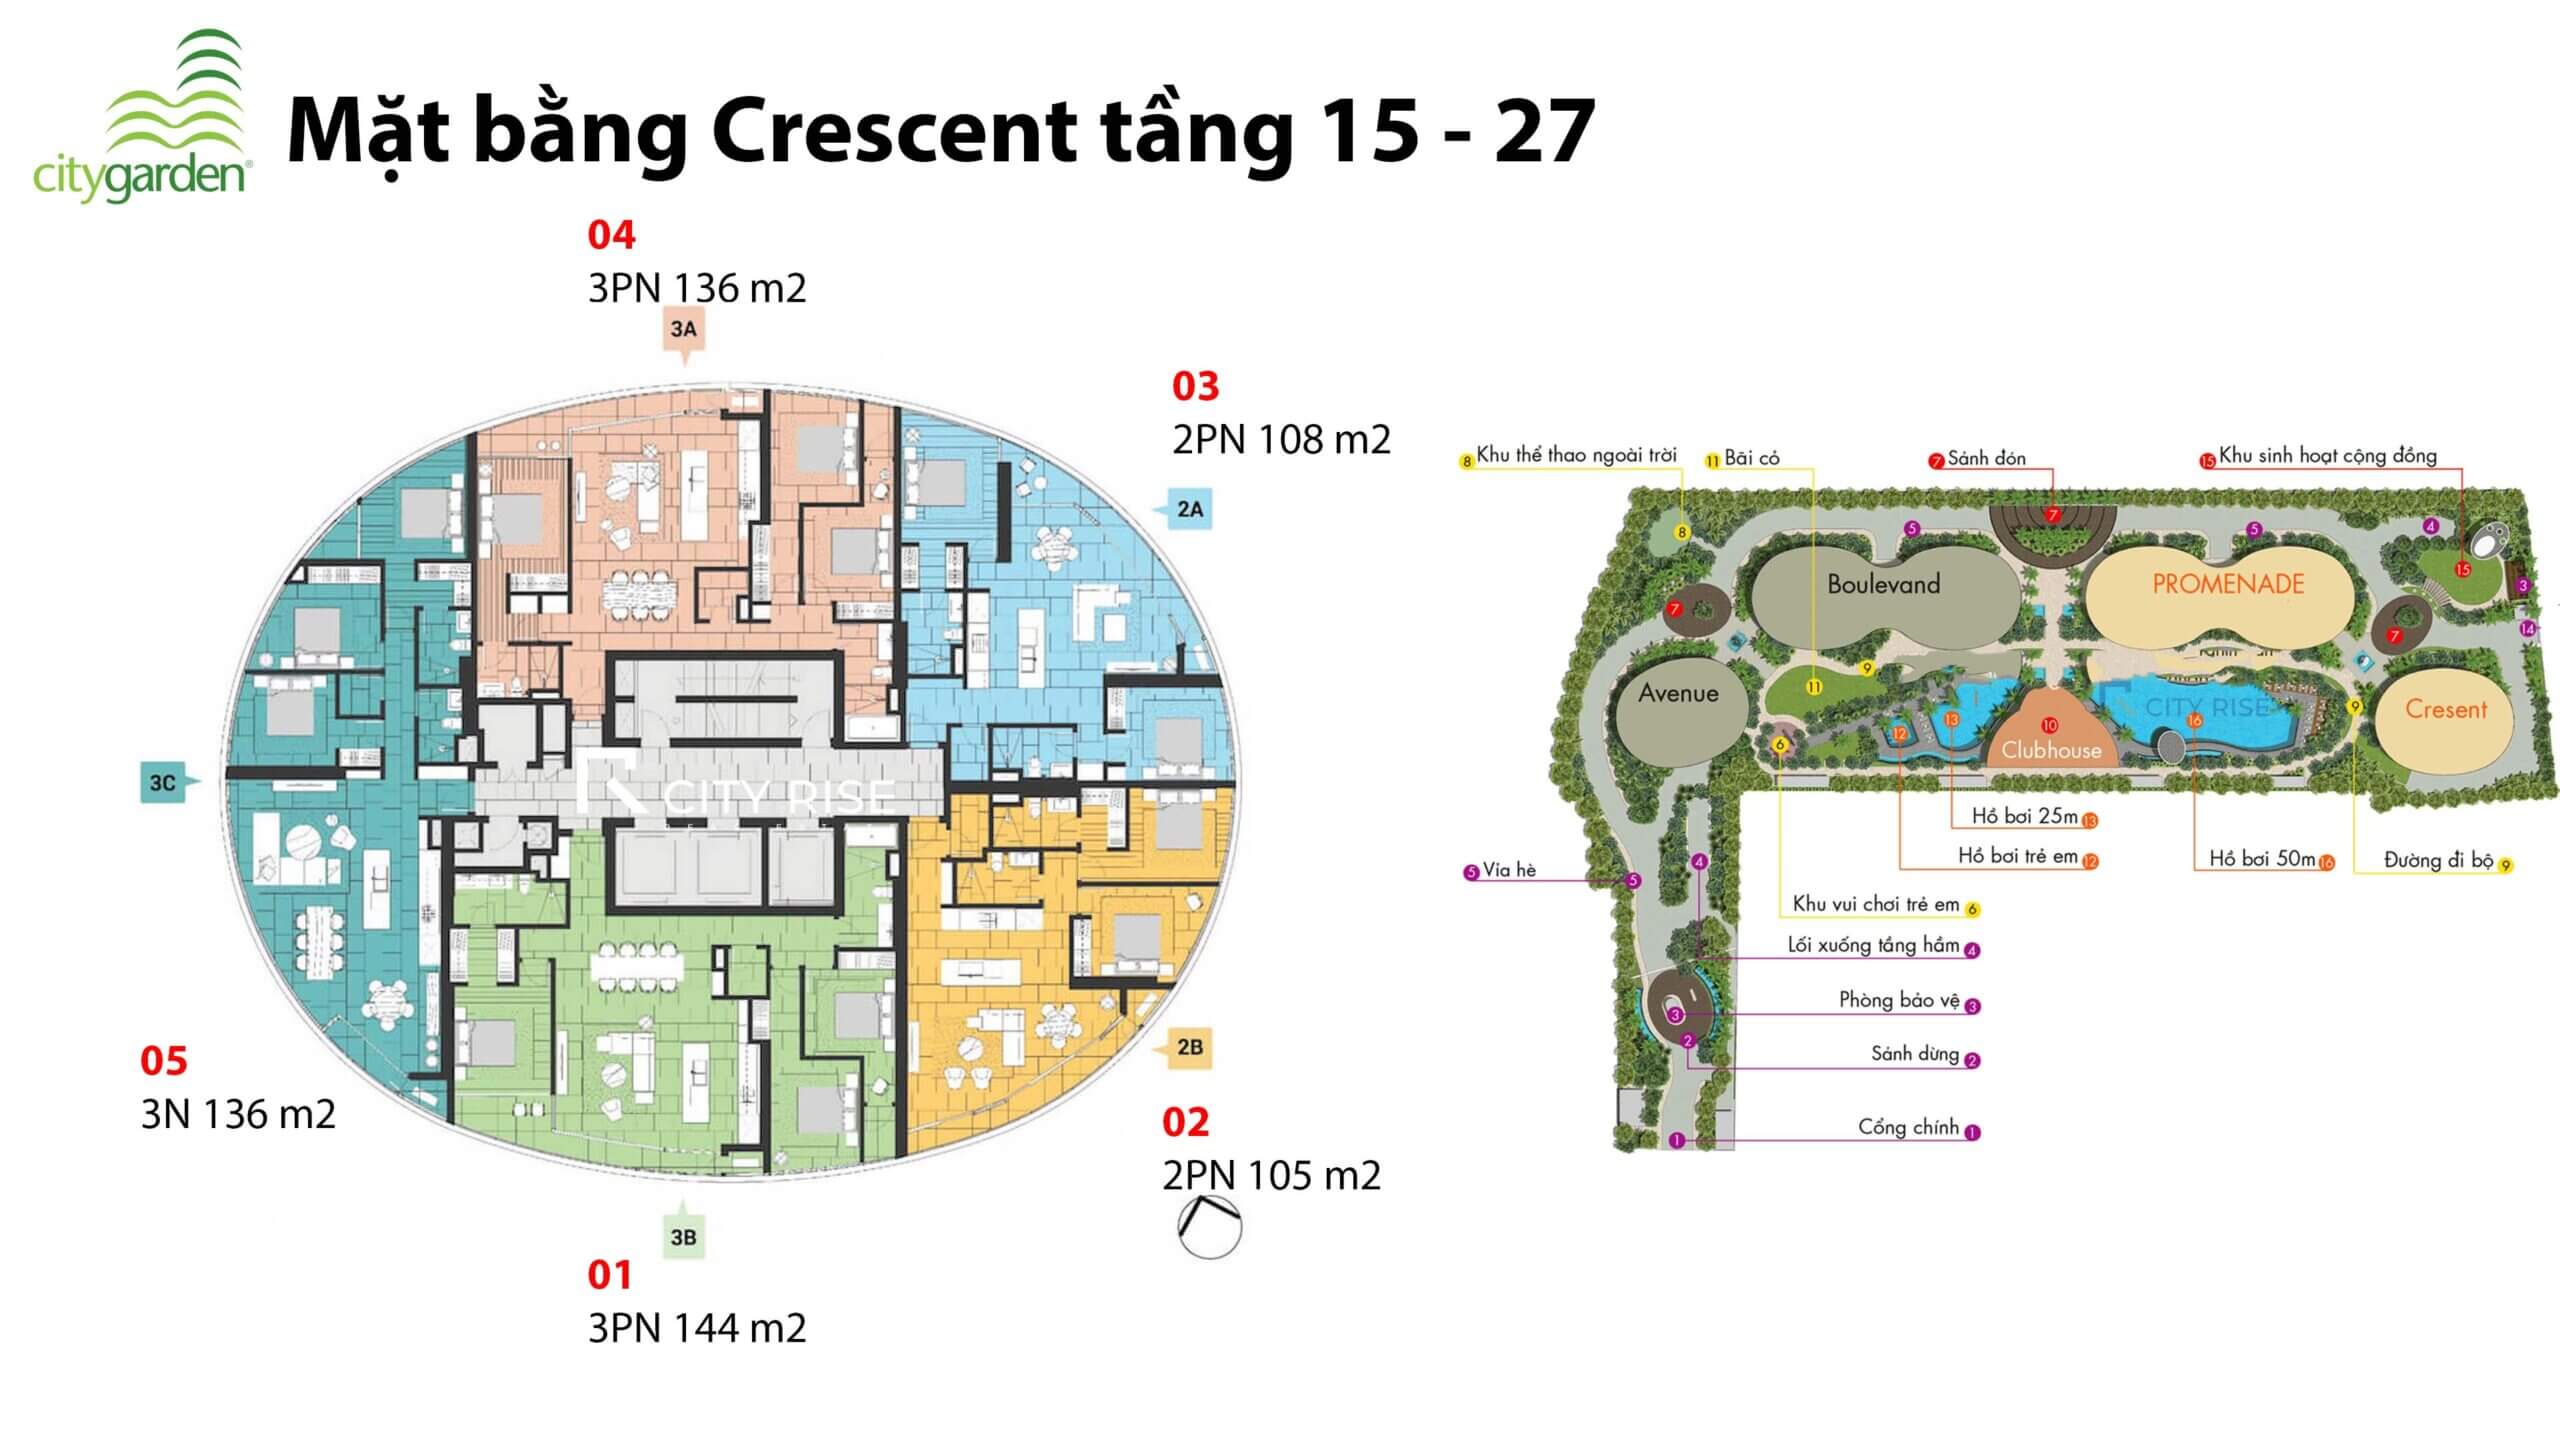 Layou mặt bằng căn hộ Crescent chung cư City Garden Bình Thạnh tầng 15-27